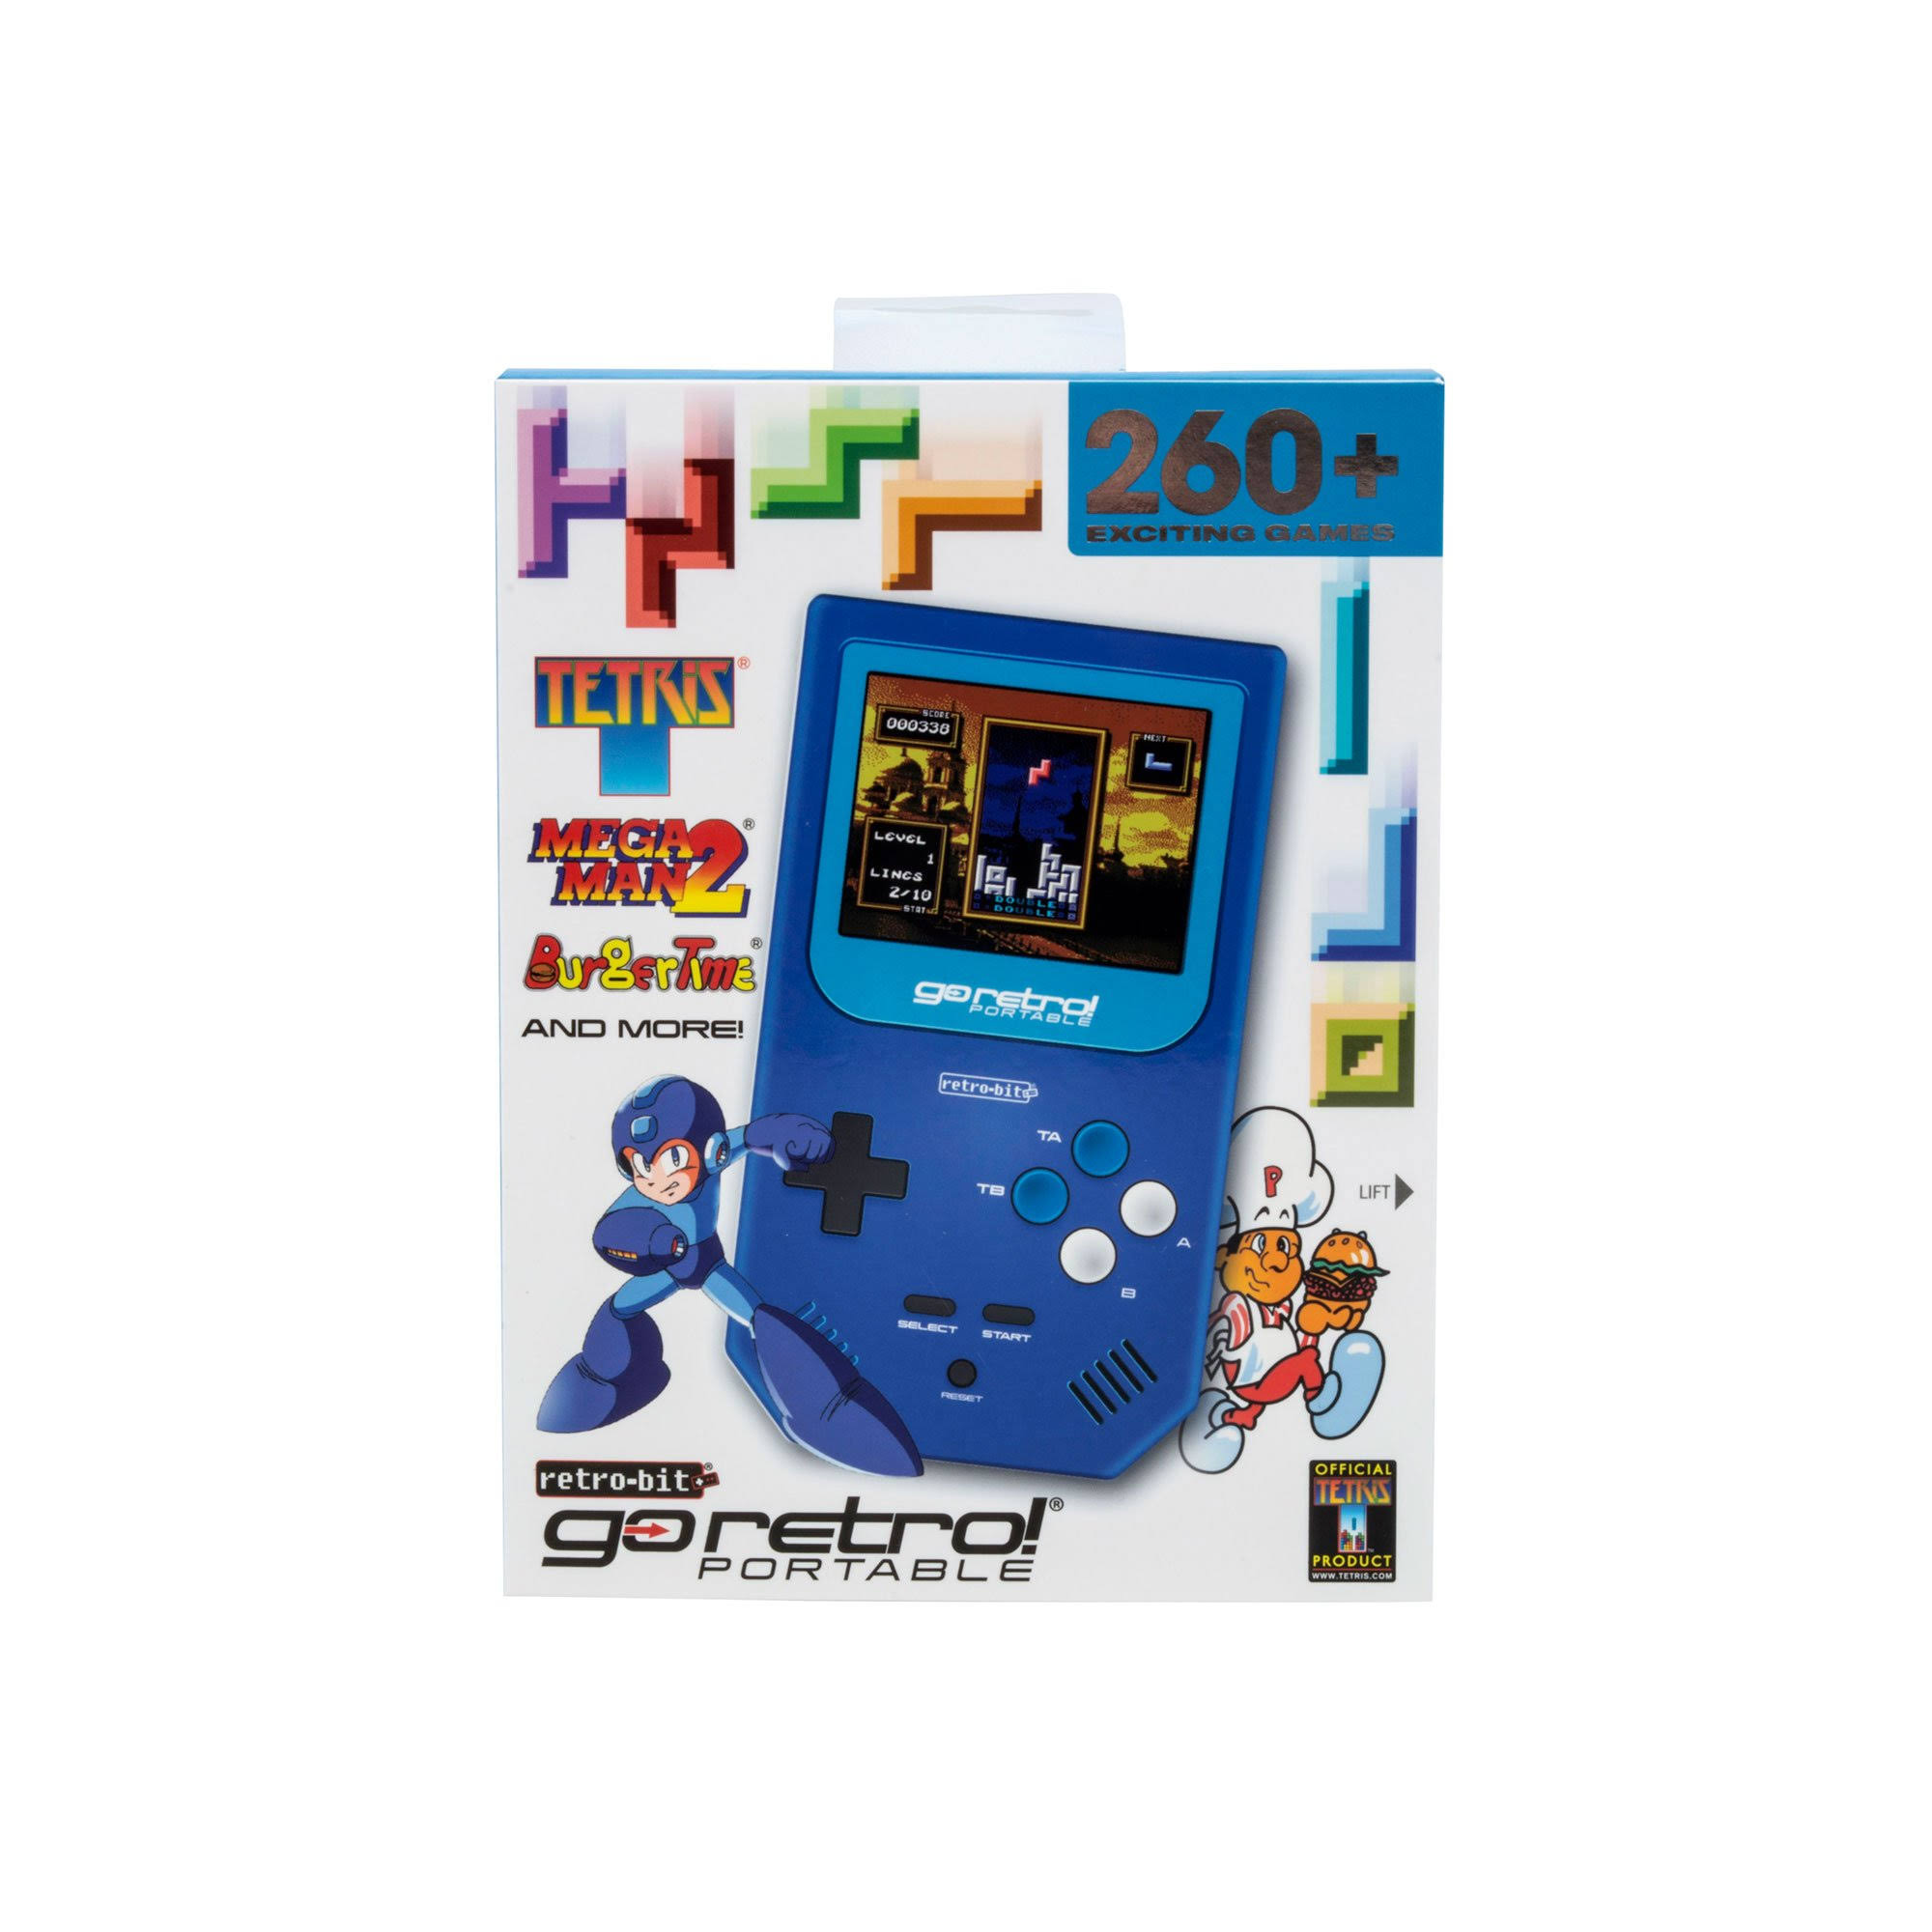 Go Retro Portable Console - Blue